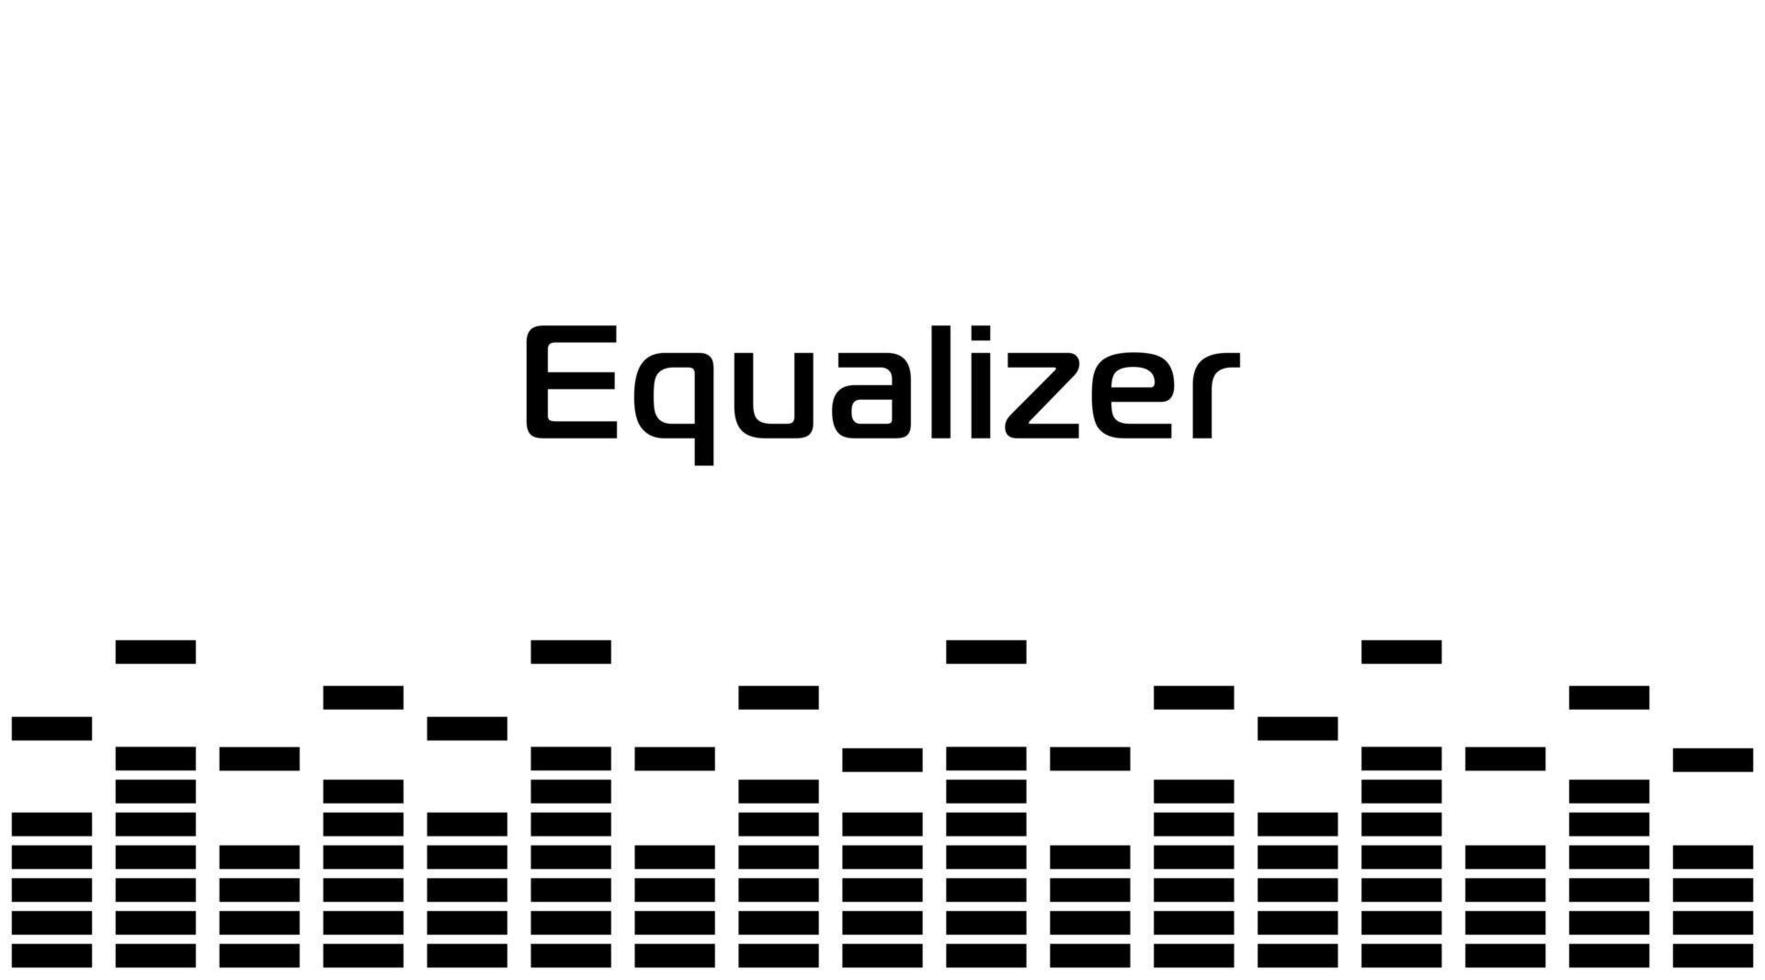 equalizador digital de som, retângulos, borda preta simples. onda de rádio de música. design gráfico de voz digital, ilustração vetorial. vetor